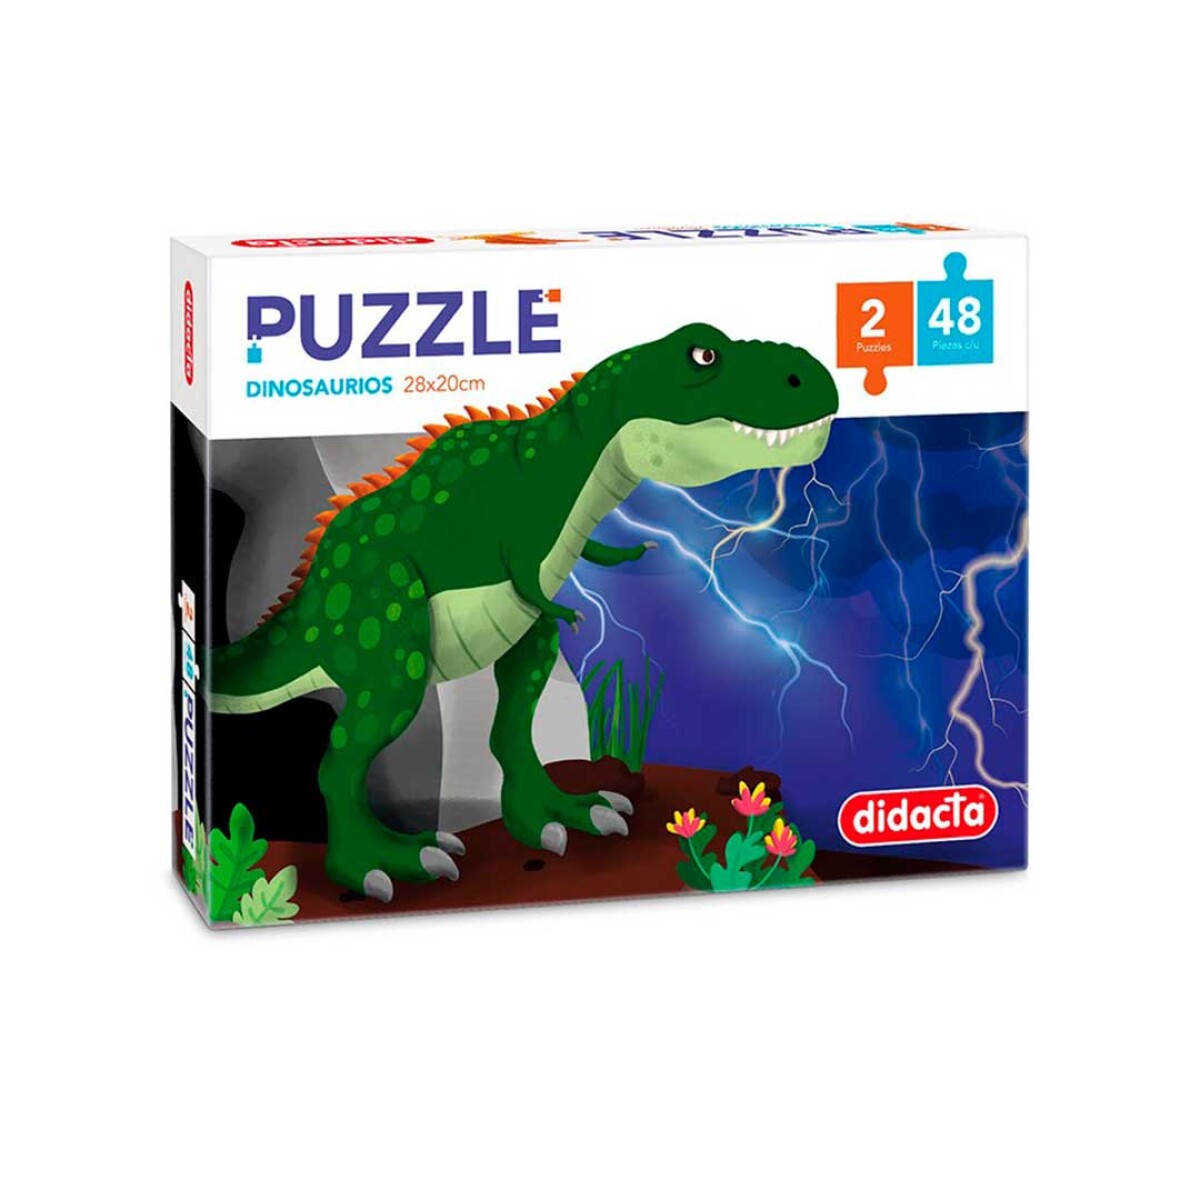 Puzzle Dinosaurios Didacta 48 piezas x2 - 001 